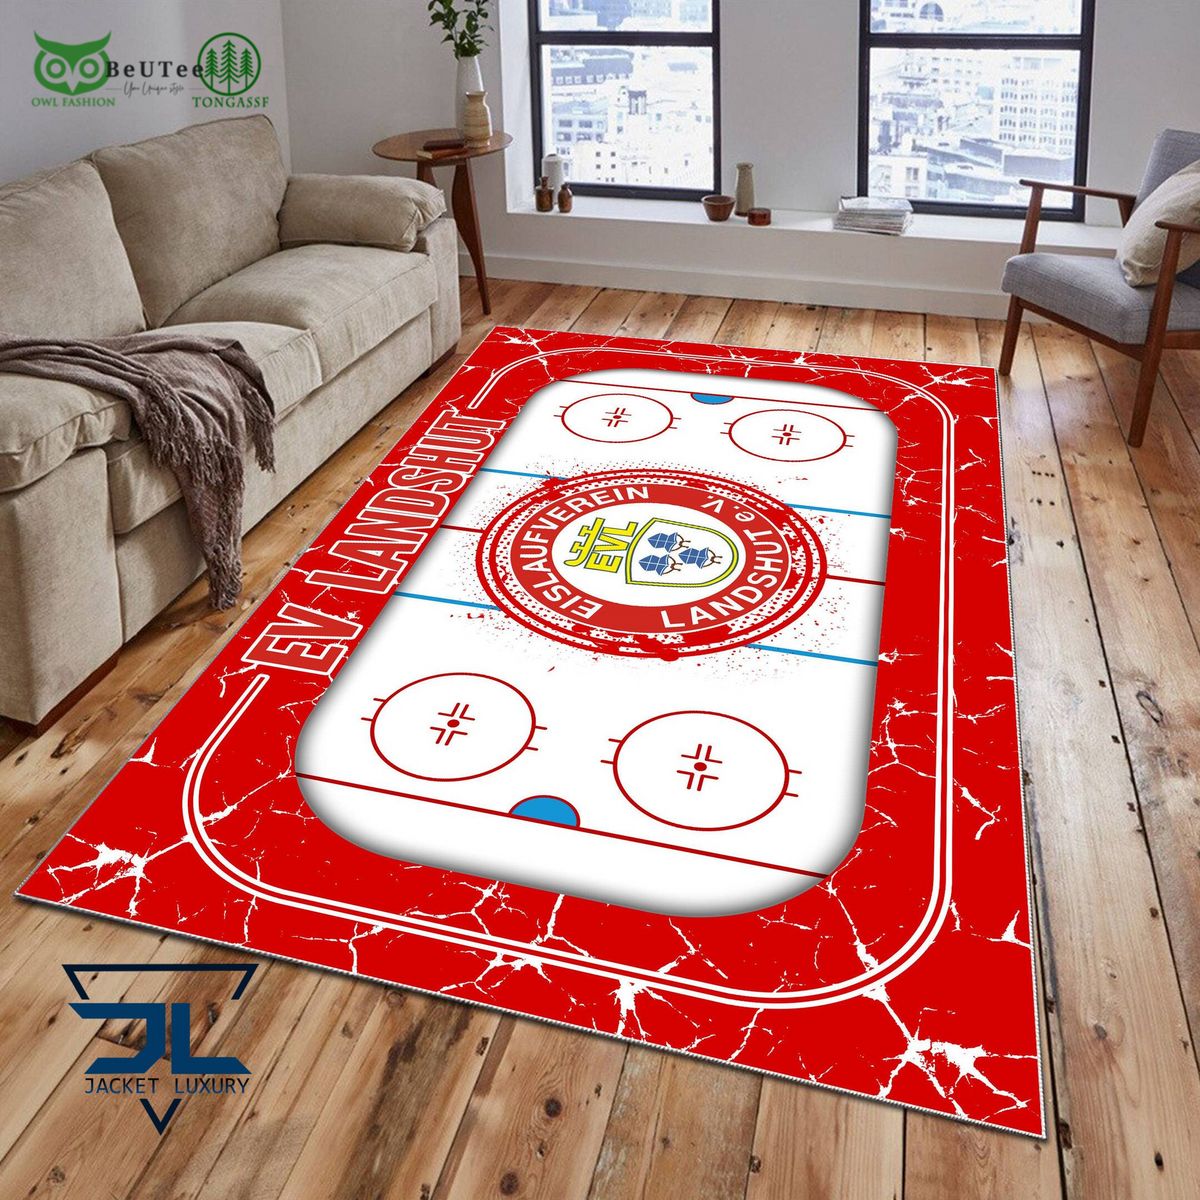 ev landshut germany ice hockey team carpet rug 1 NW8py